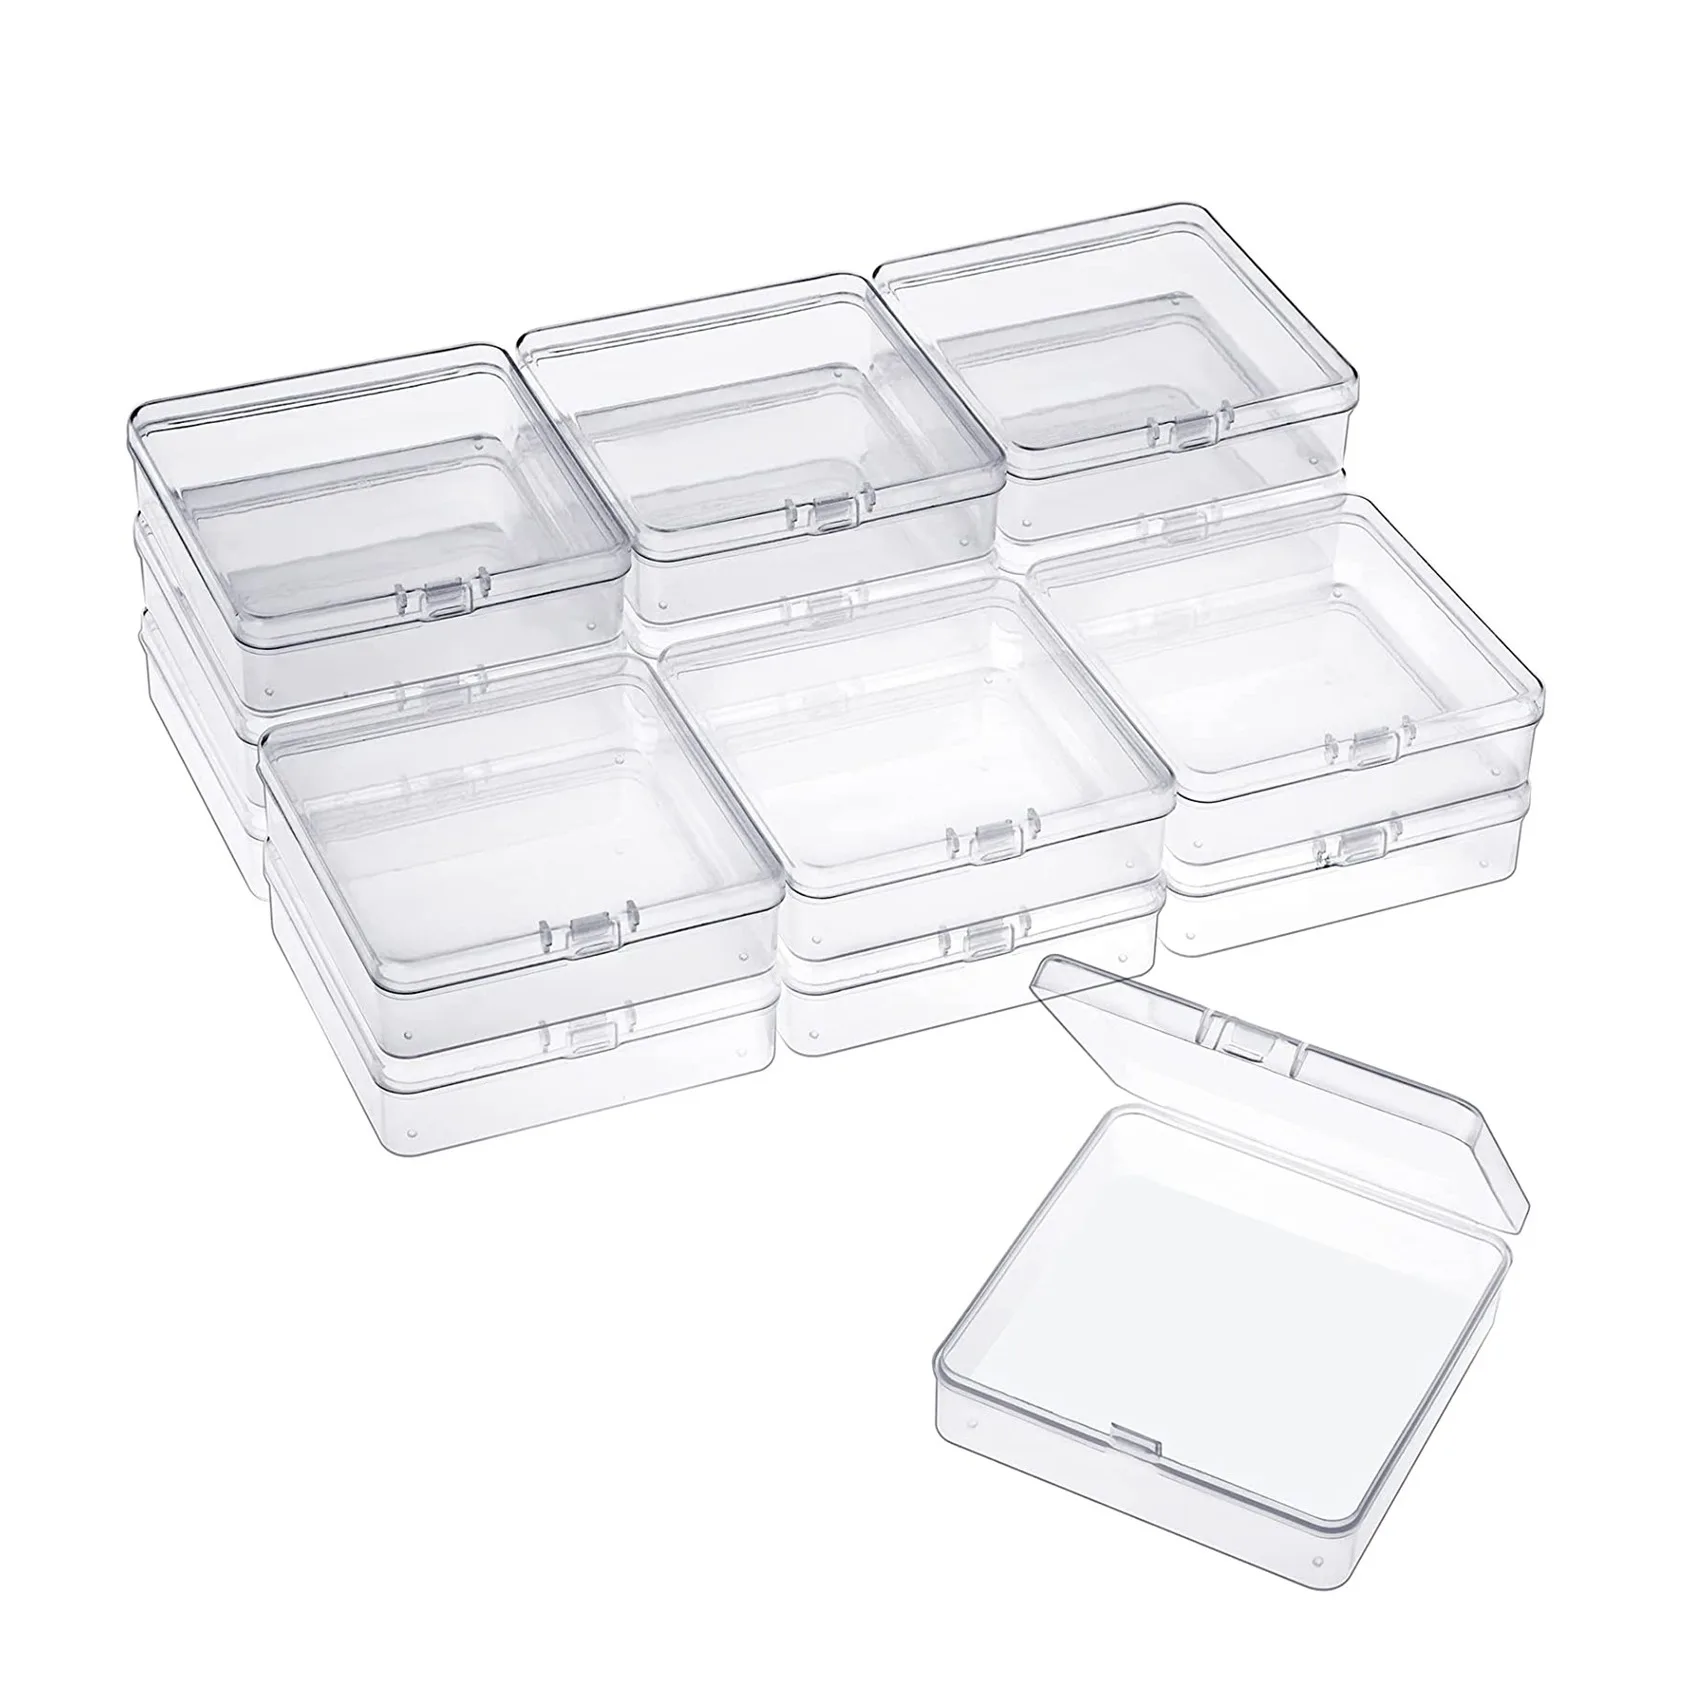 

16 упаковок небольших контейнеров прозрачные пластиковые коробки Органайзеры для хранения бусин с откидными крышками для мелких предметов, ювелирных изделий, поделок